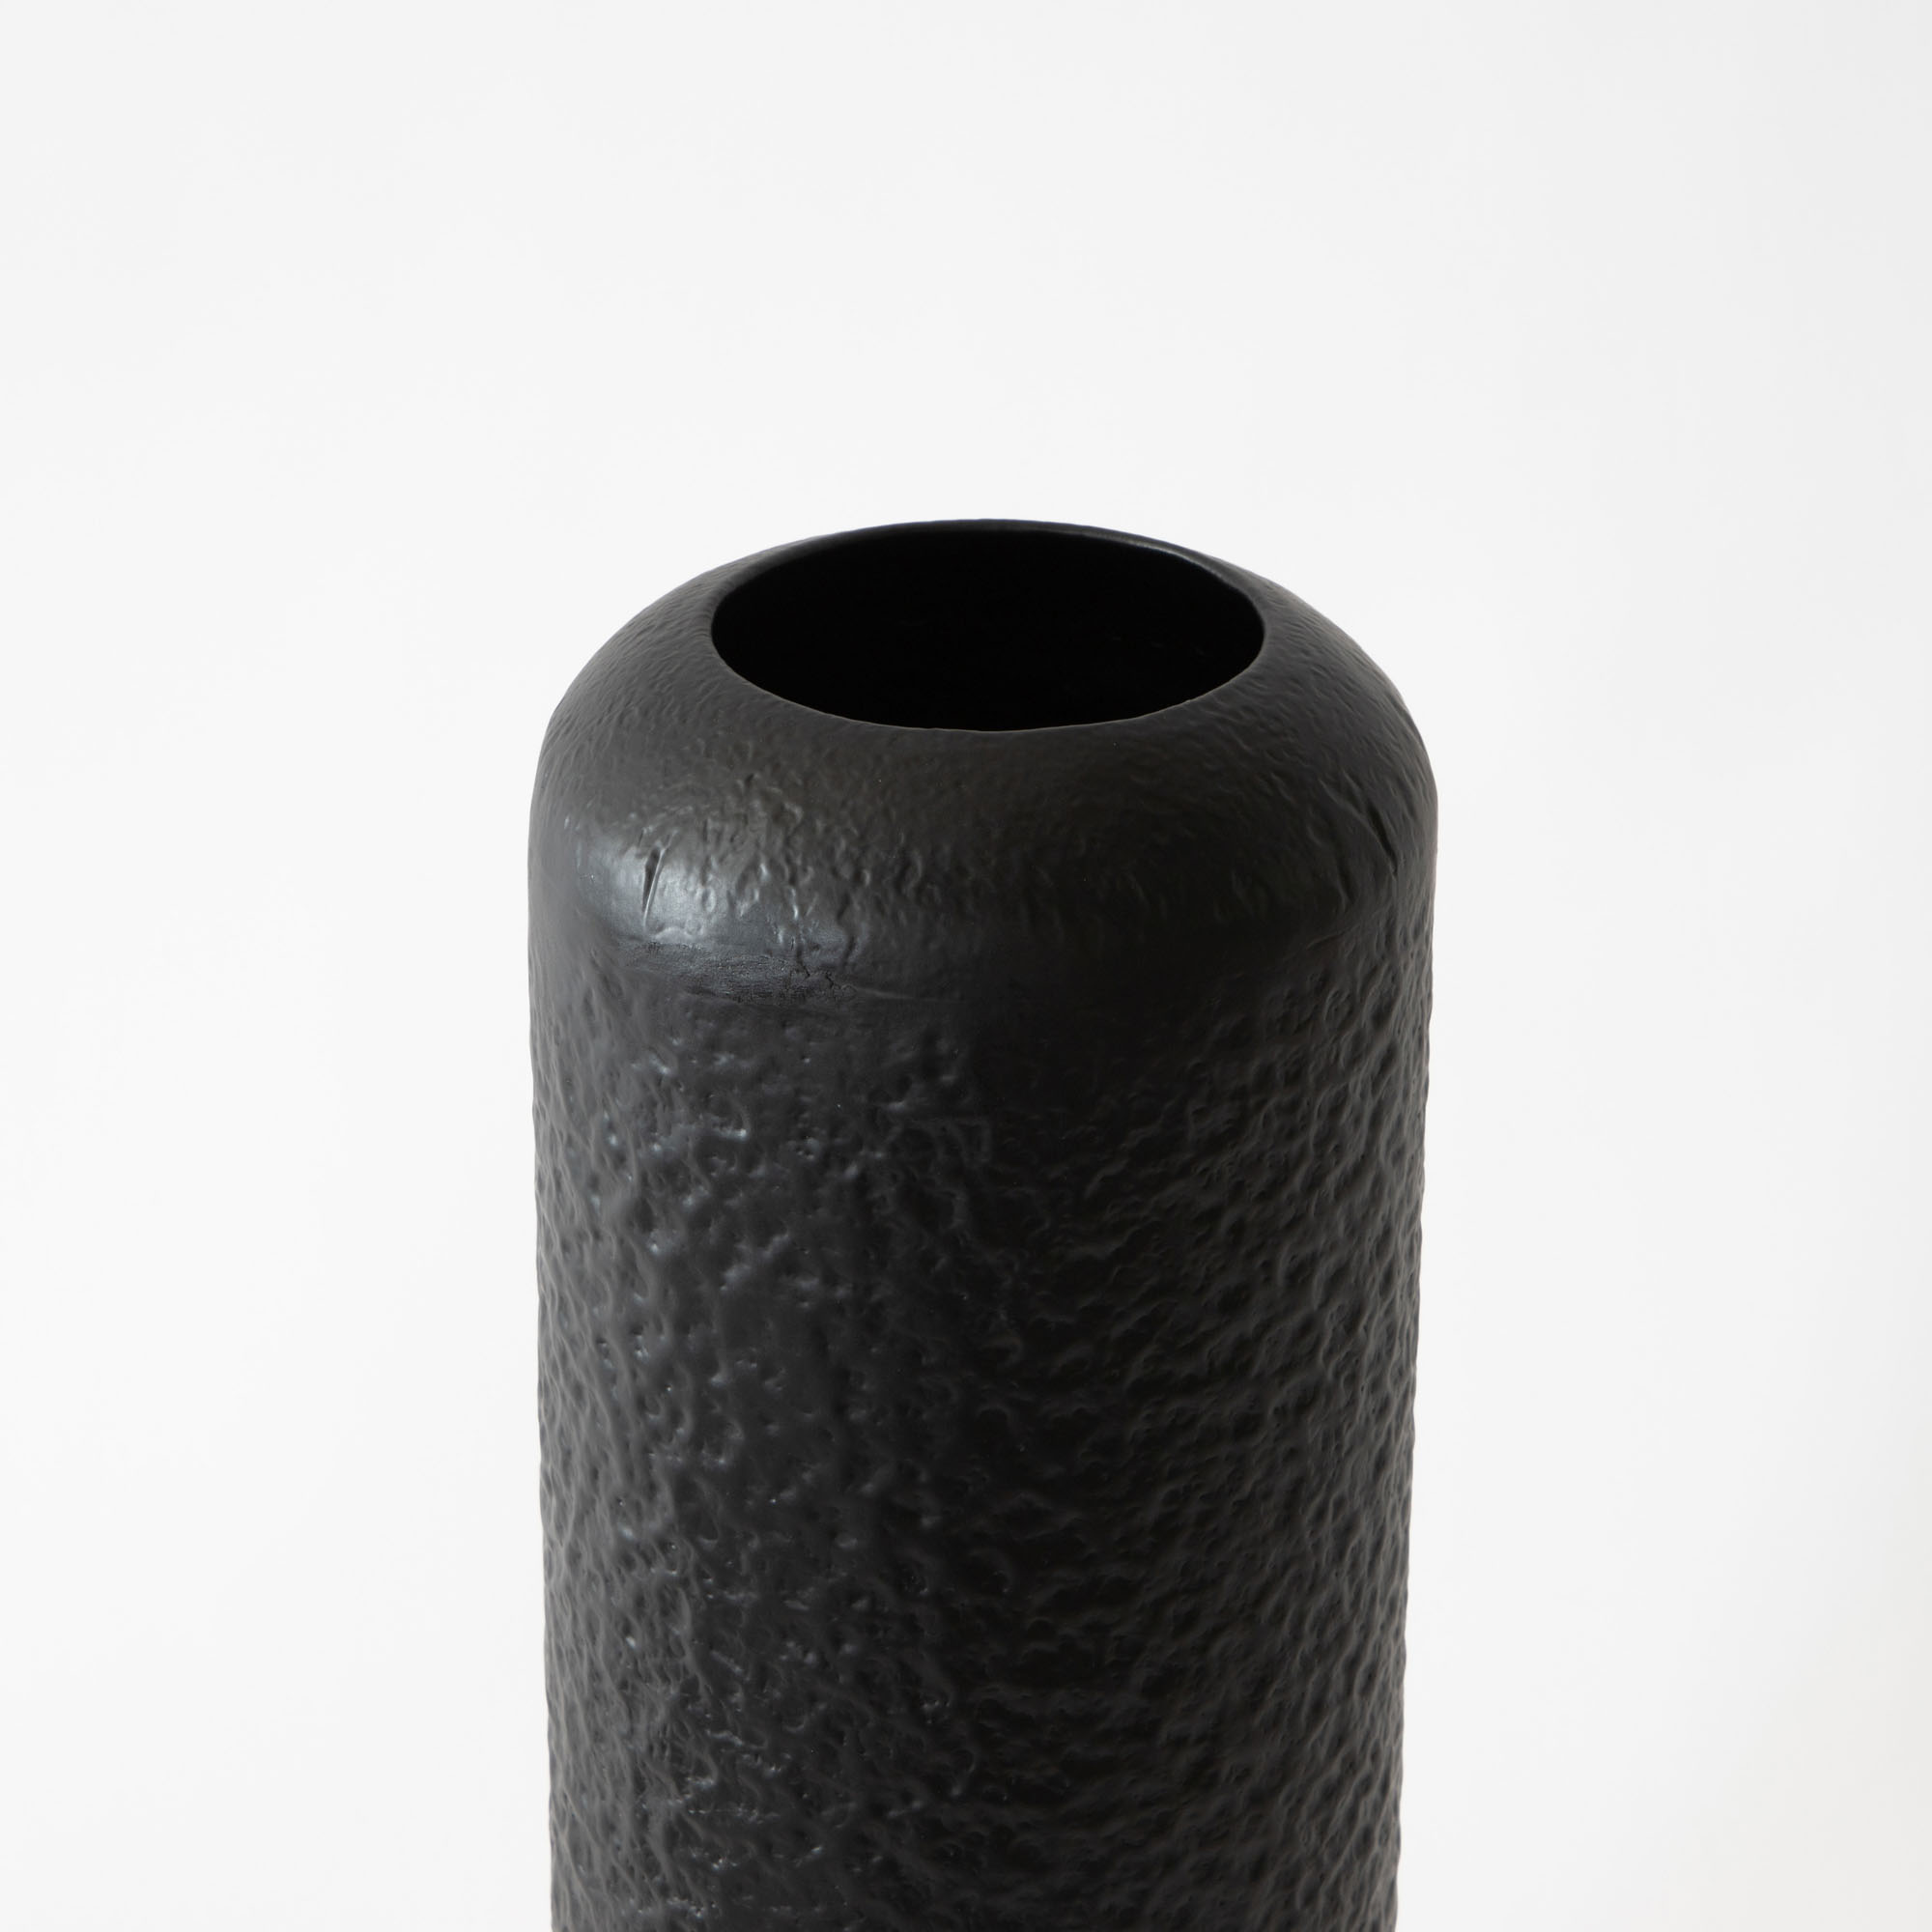 Proto Hammered Iron Vase